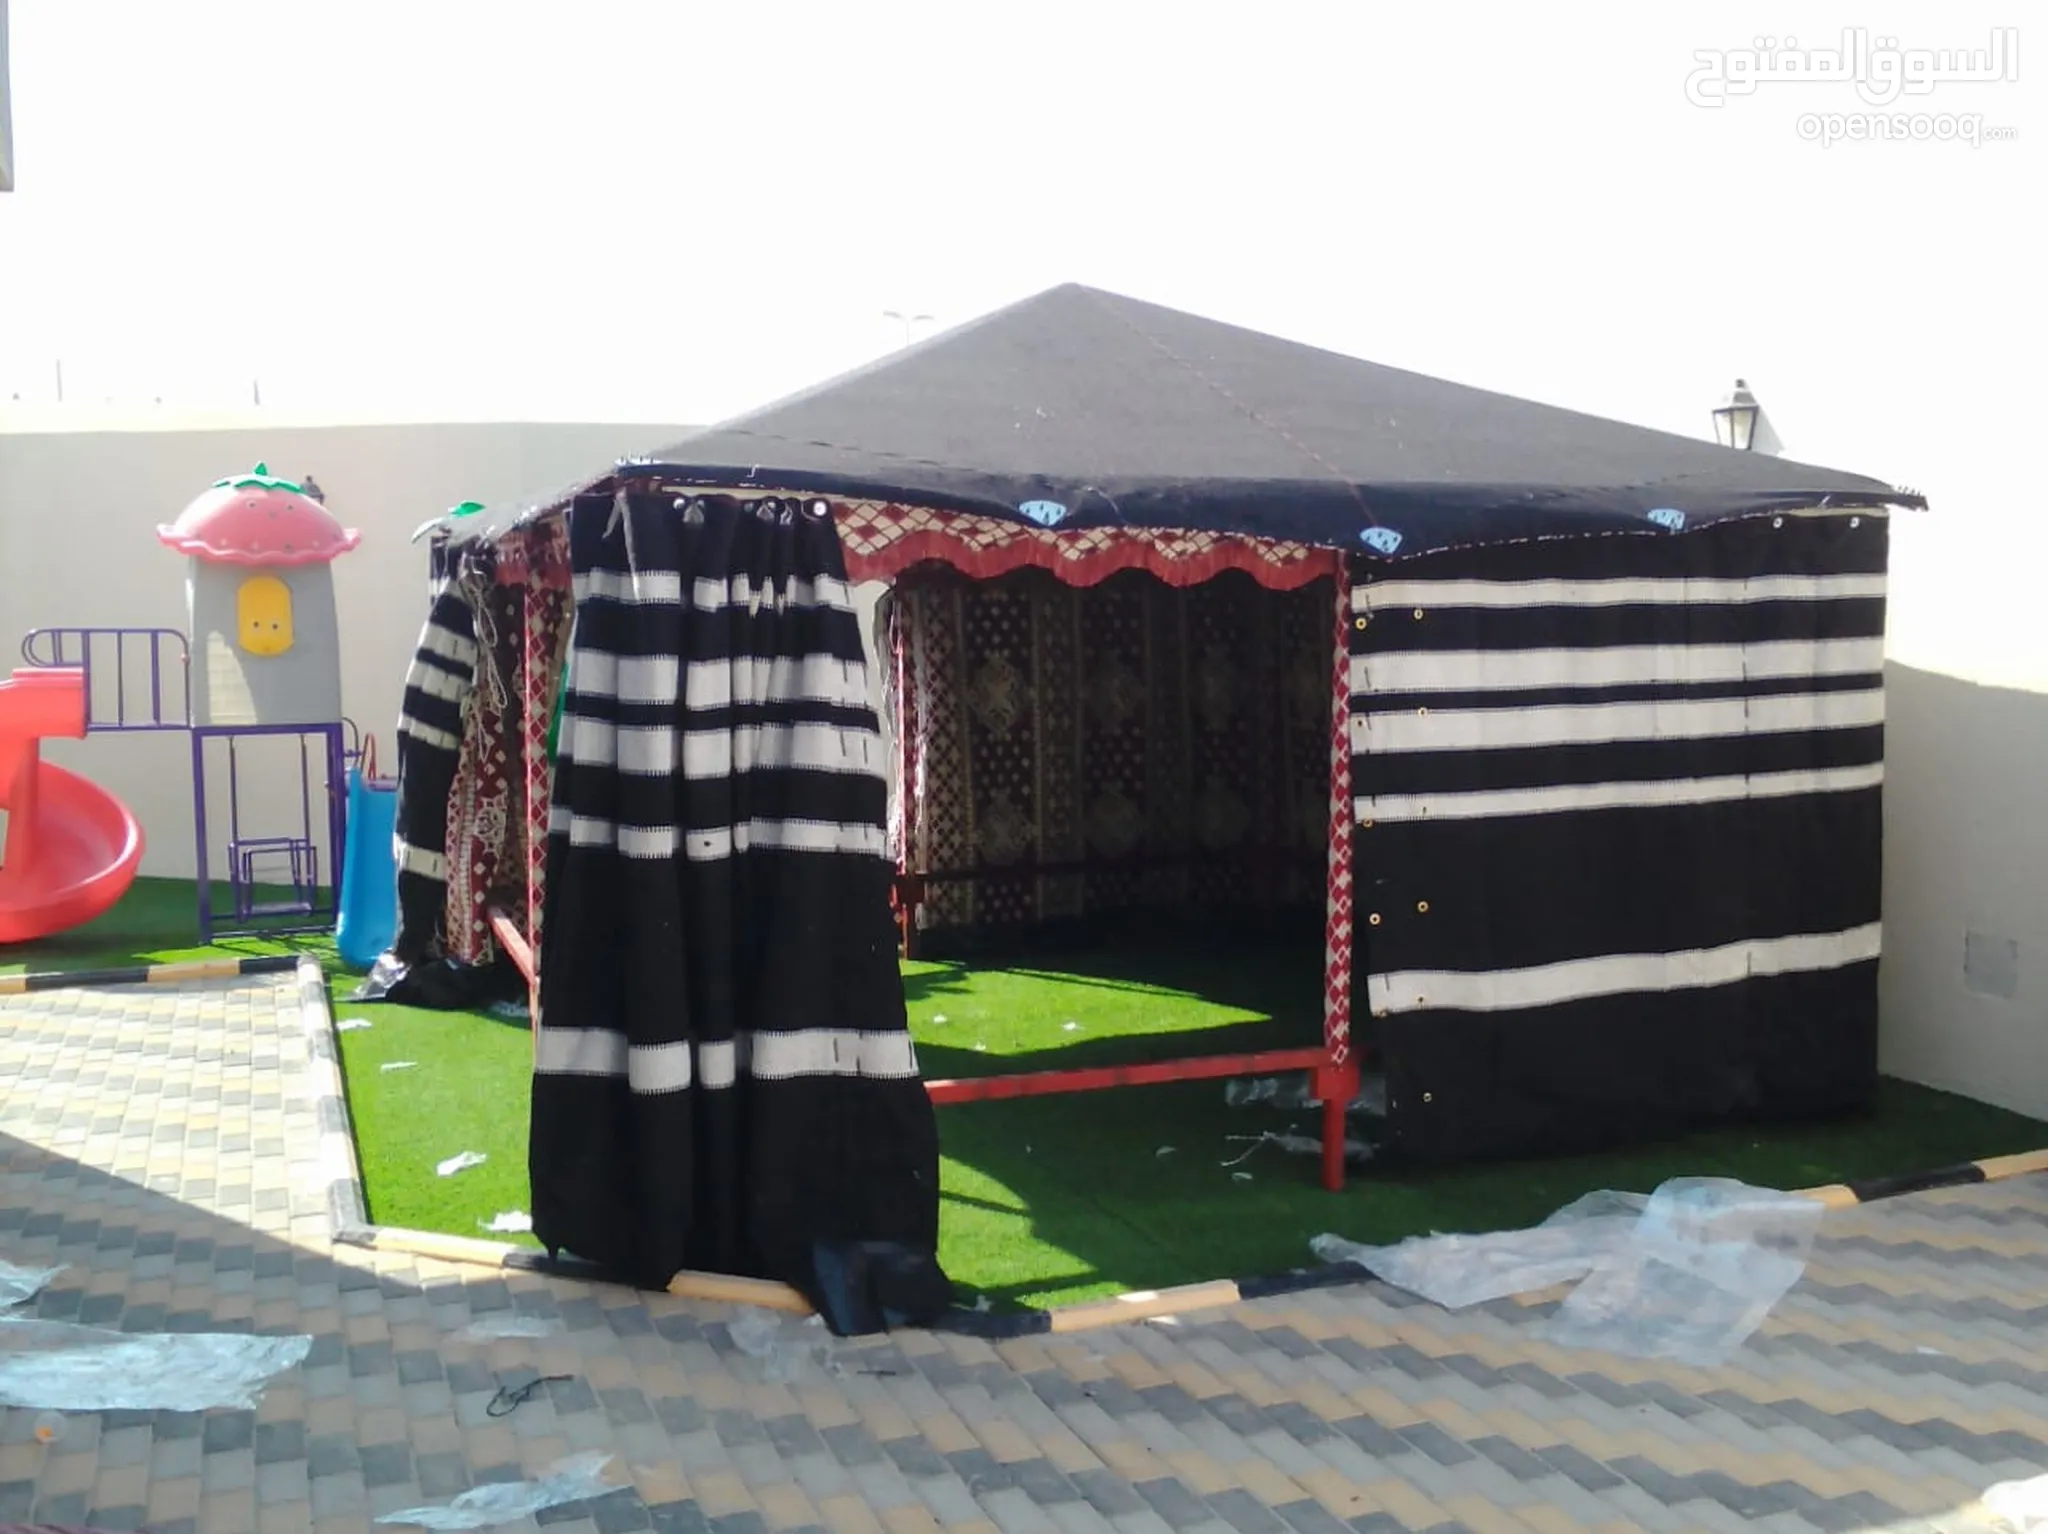 خيام للبيع بسعر رخيص - لوازم تخييم في الرياض : خيمة صغيرة للبيع